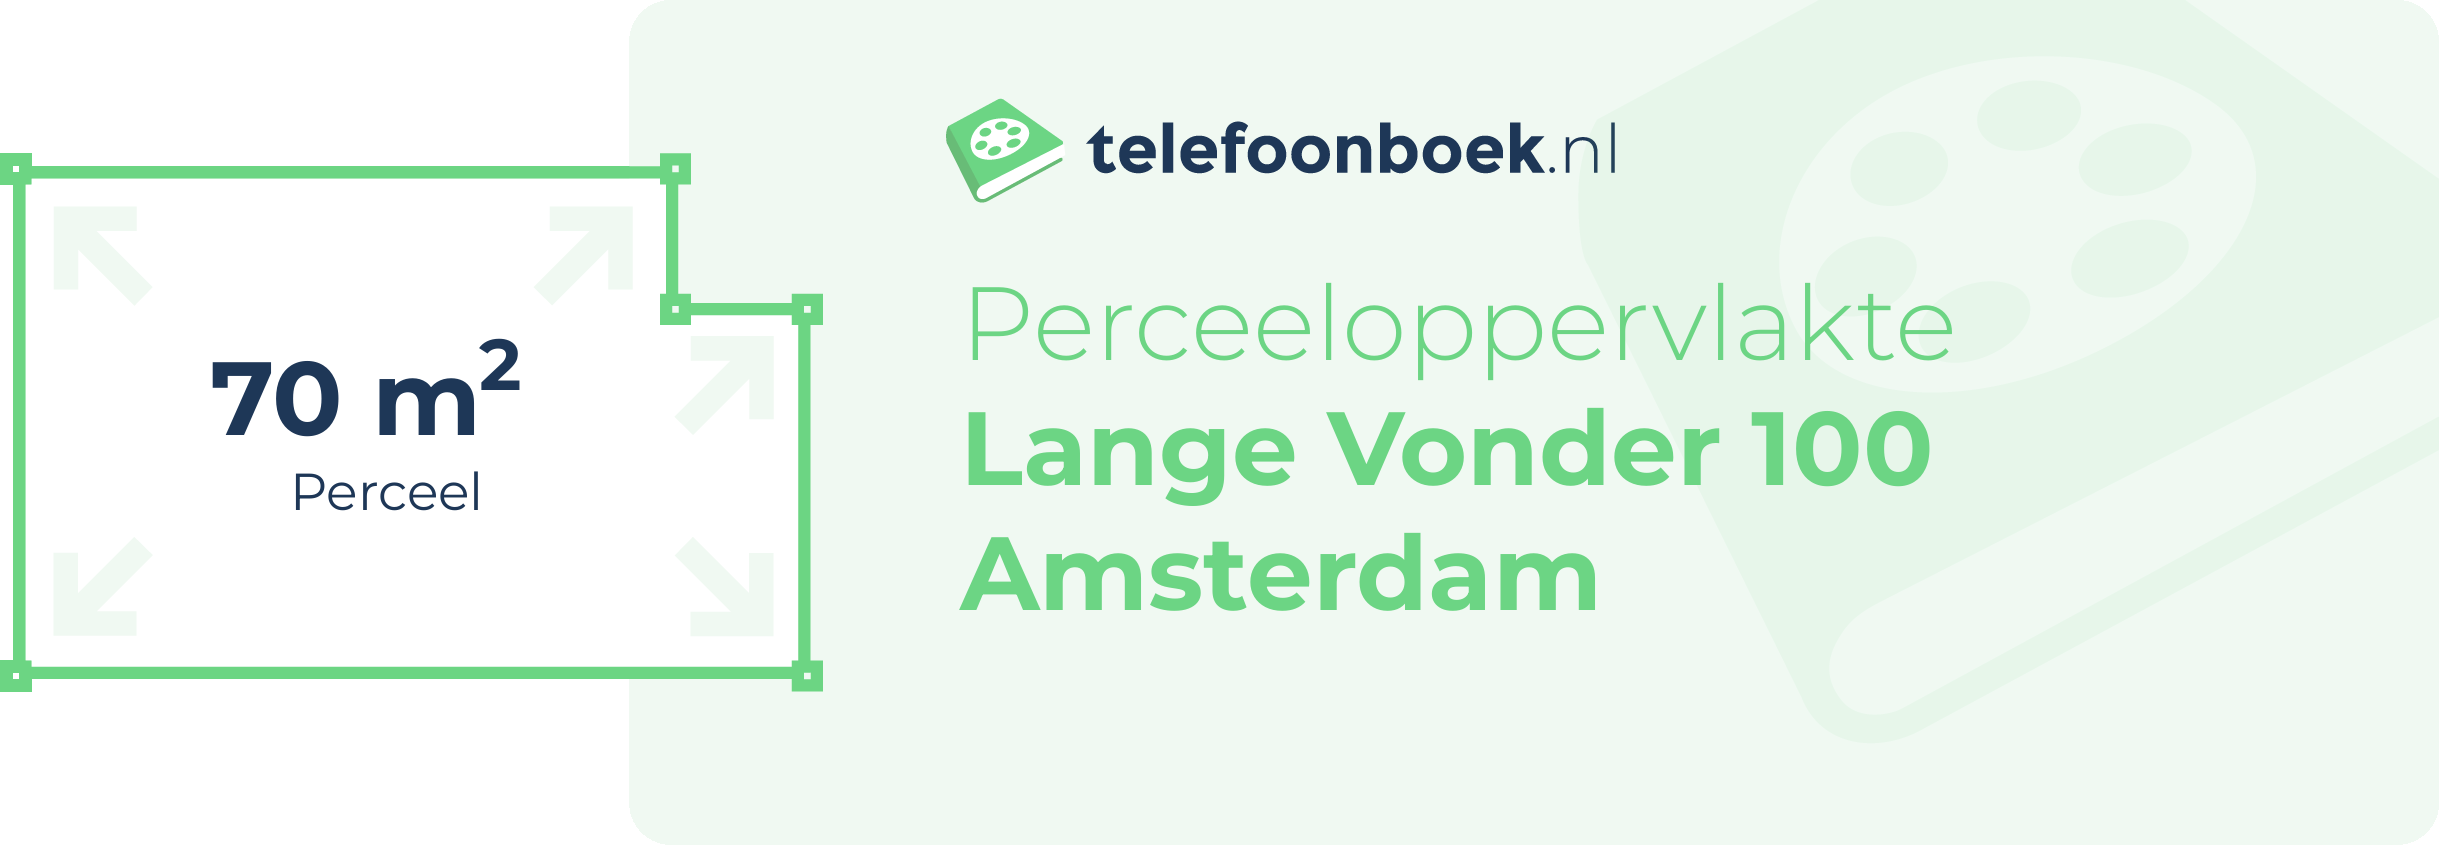 Perceeloppervlakte Lange Vonder 100 Amsterdam